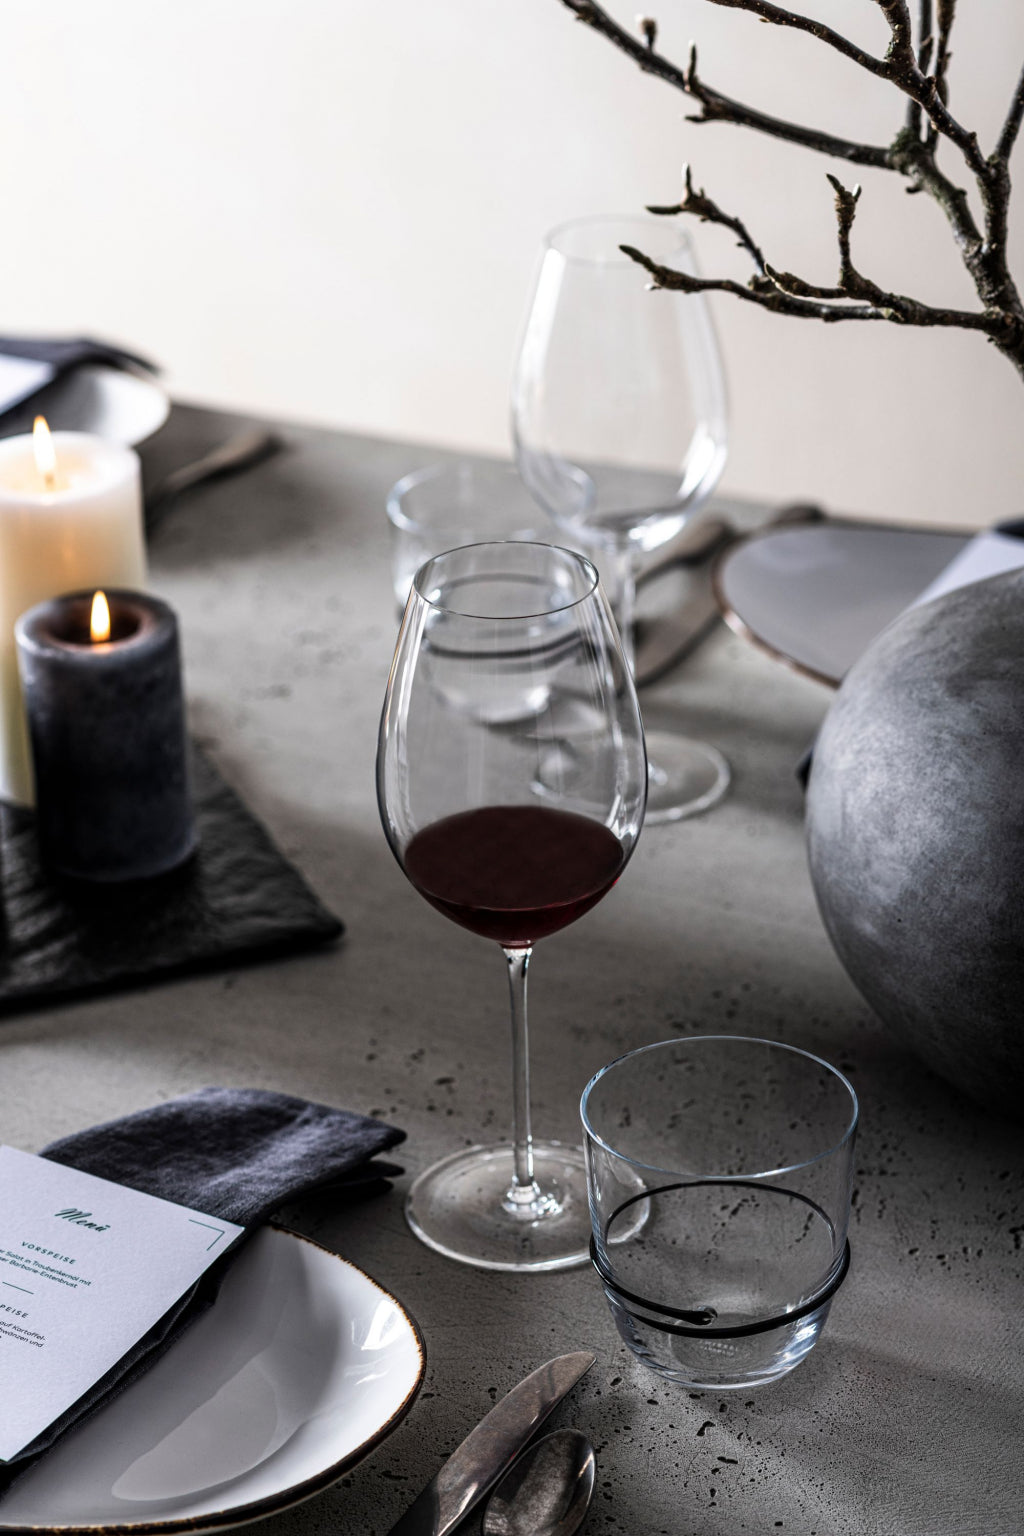 Zwiesel Glas Enoteca Rioja wijnglas 1 - 0.689Ltr - Geschenkverpakking 2 glazen